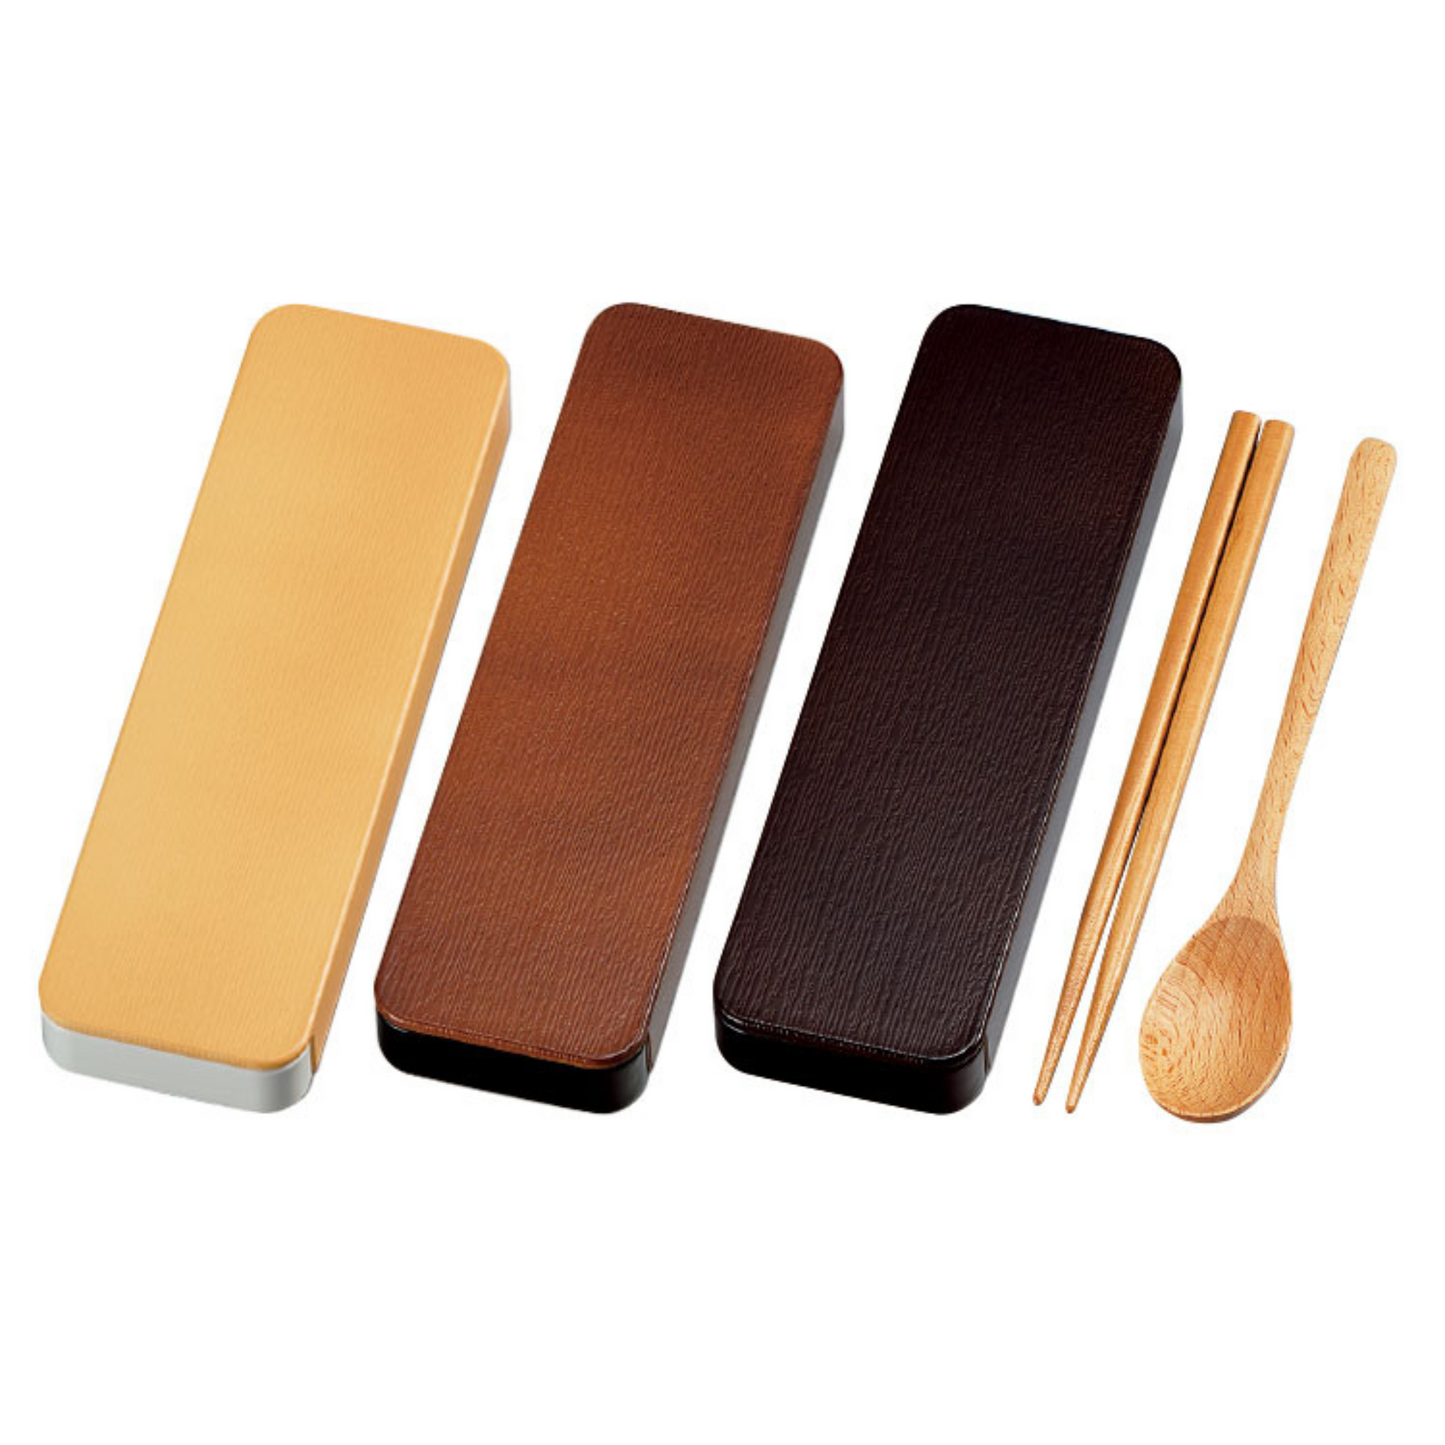 Wooden Chopstick and Spoon Set | Dark Brown